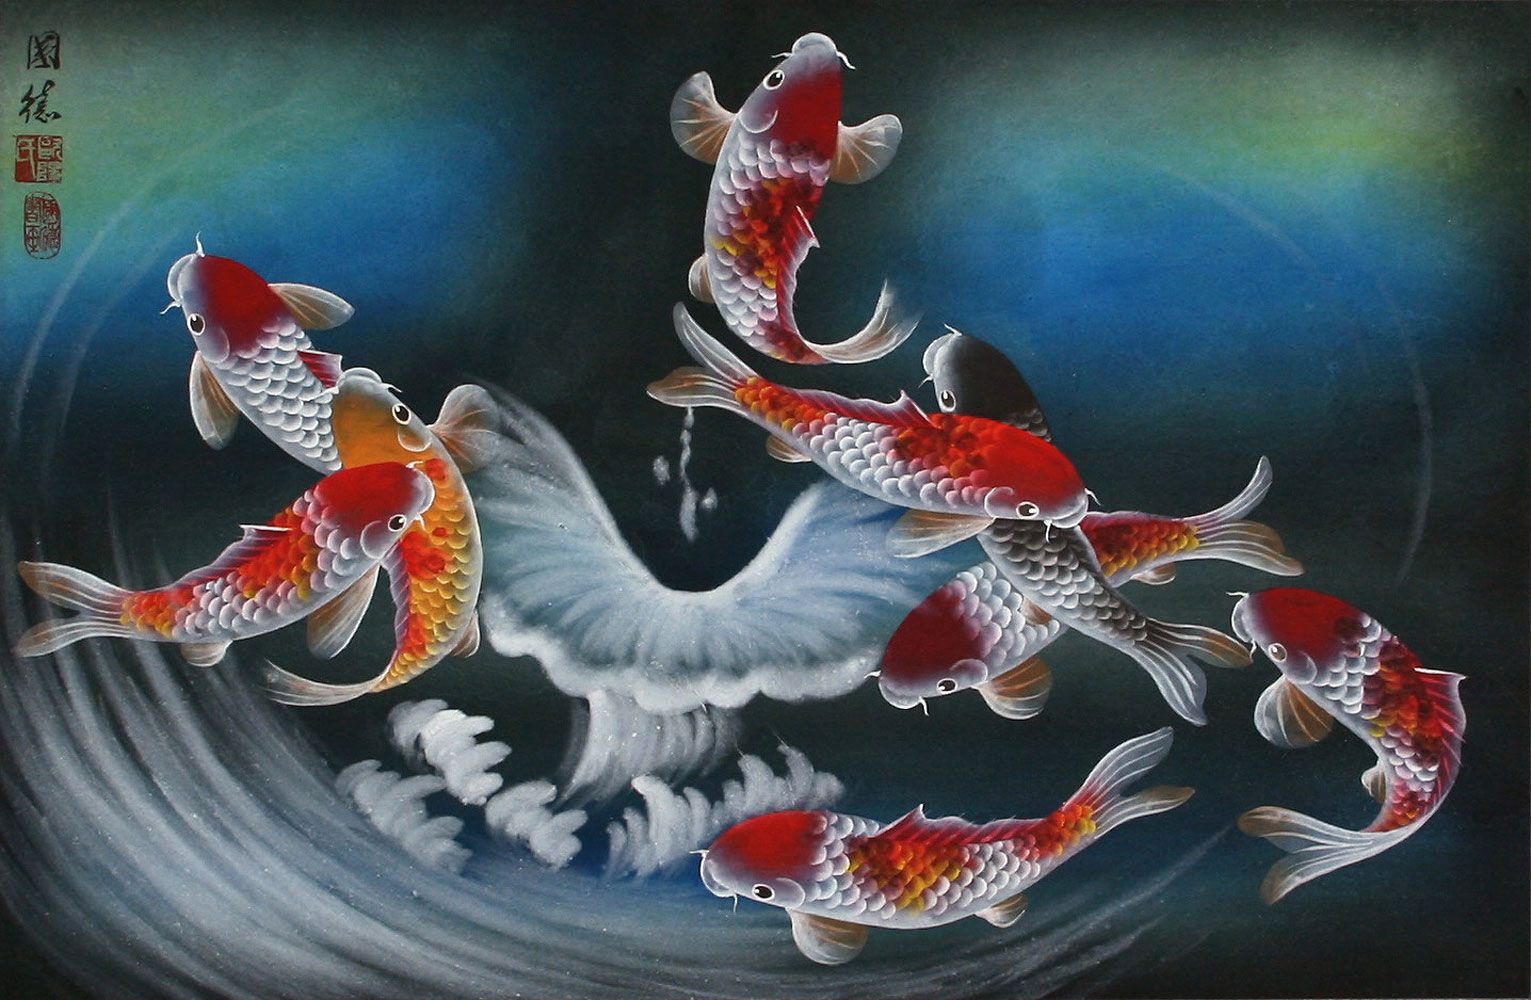 Hình nghệ thuật cá là những tác phẩm nghệ thuật rất đặc biệt, đưa hình ảnh của cá thành tác phẩm nghệ thuật sống động. Hãy xem những hình nghệ thuật cá để thấy được sự tinh tế và độc đáo của chúng.